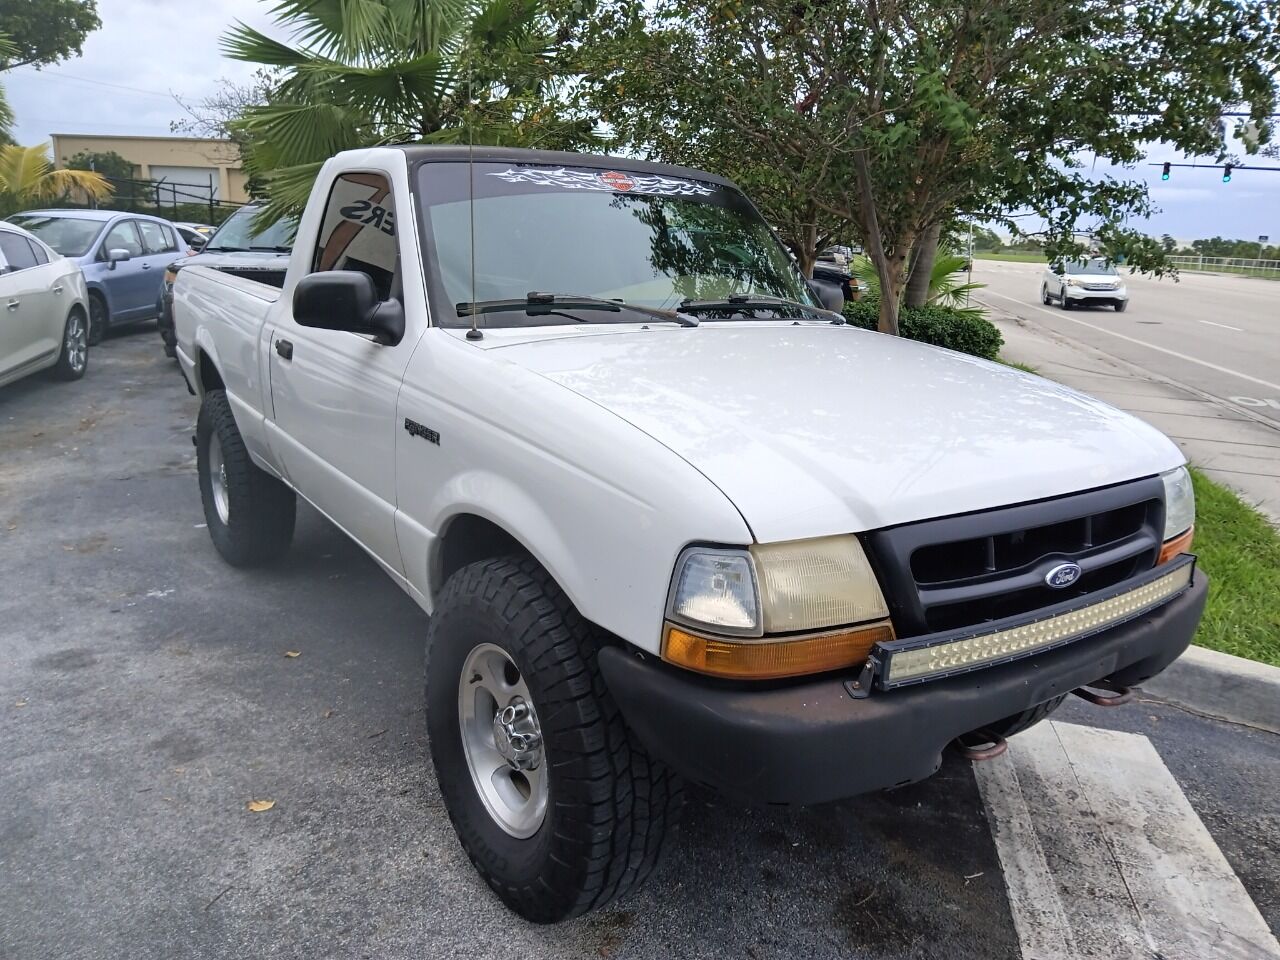 2000 Ford Ranger Pickup - $2,950